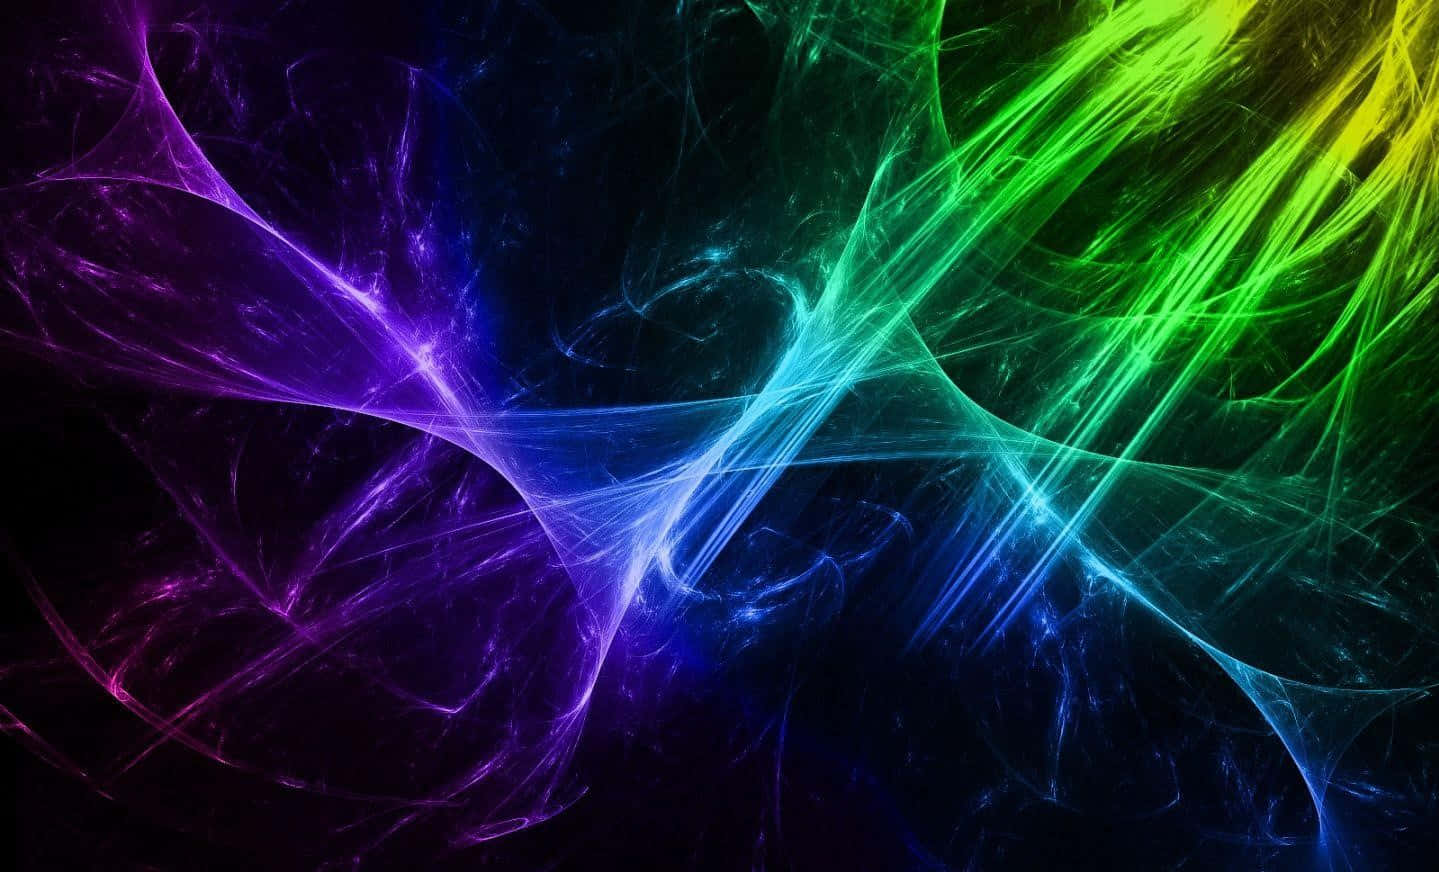 Abstract Neon Light Fractals.jpg